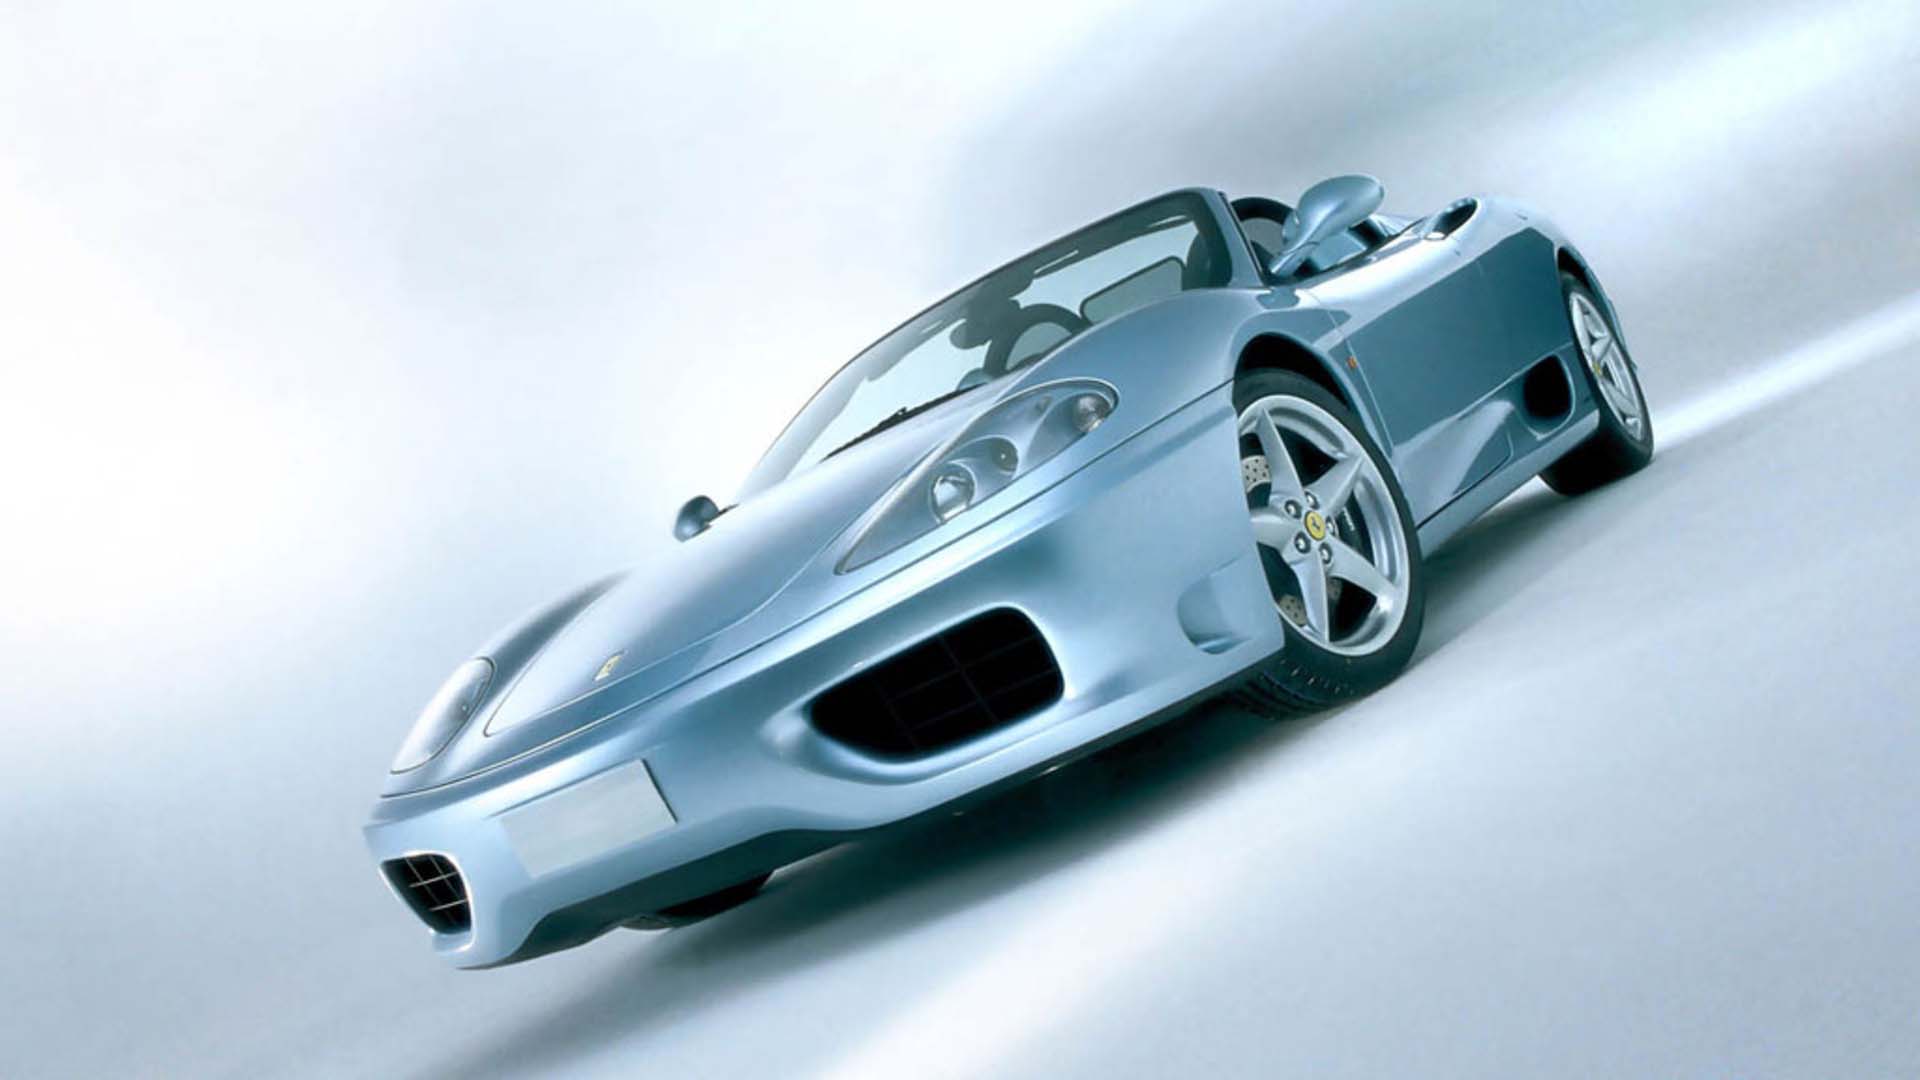 Best Top 20 Ferrari Wallpaper Gallery. - Original Preview - PIC ...